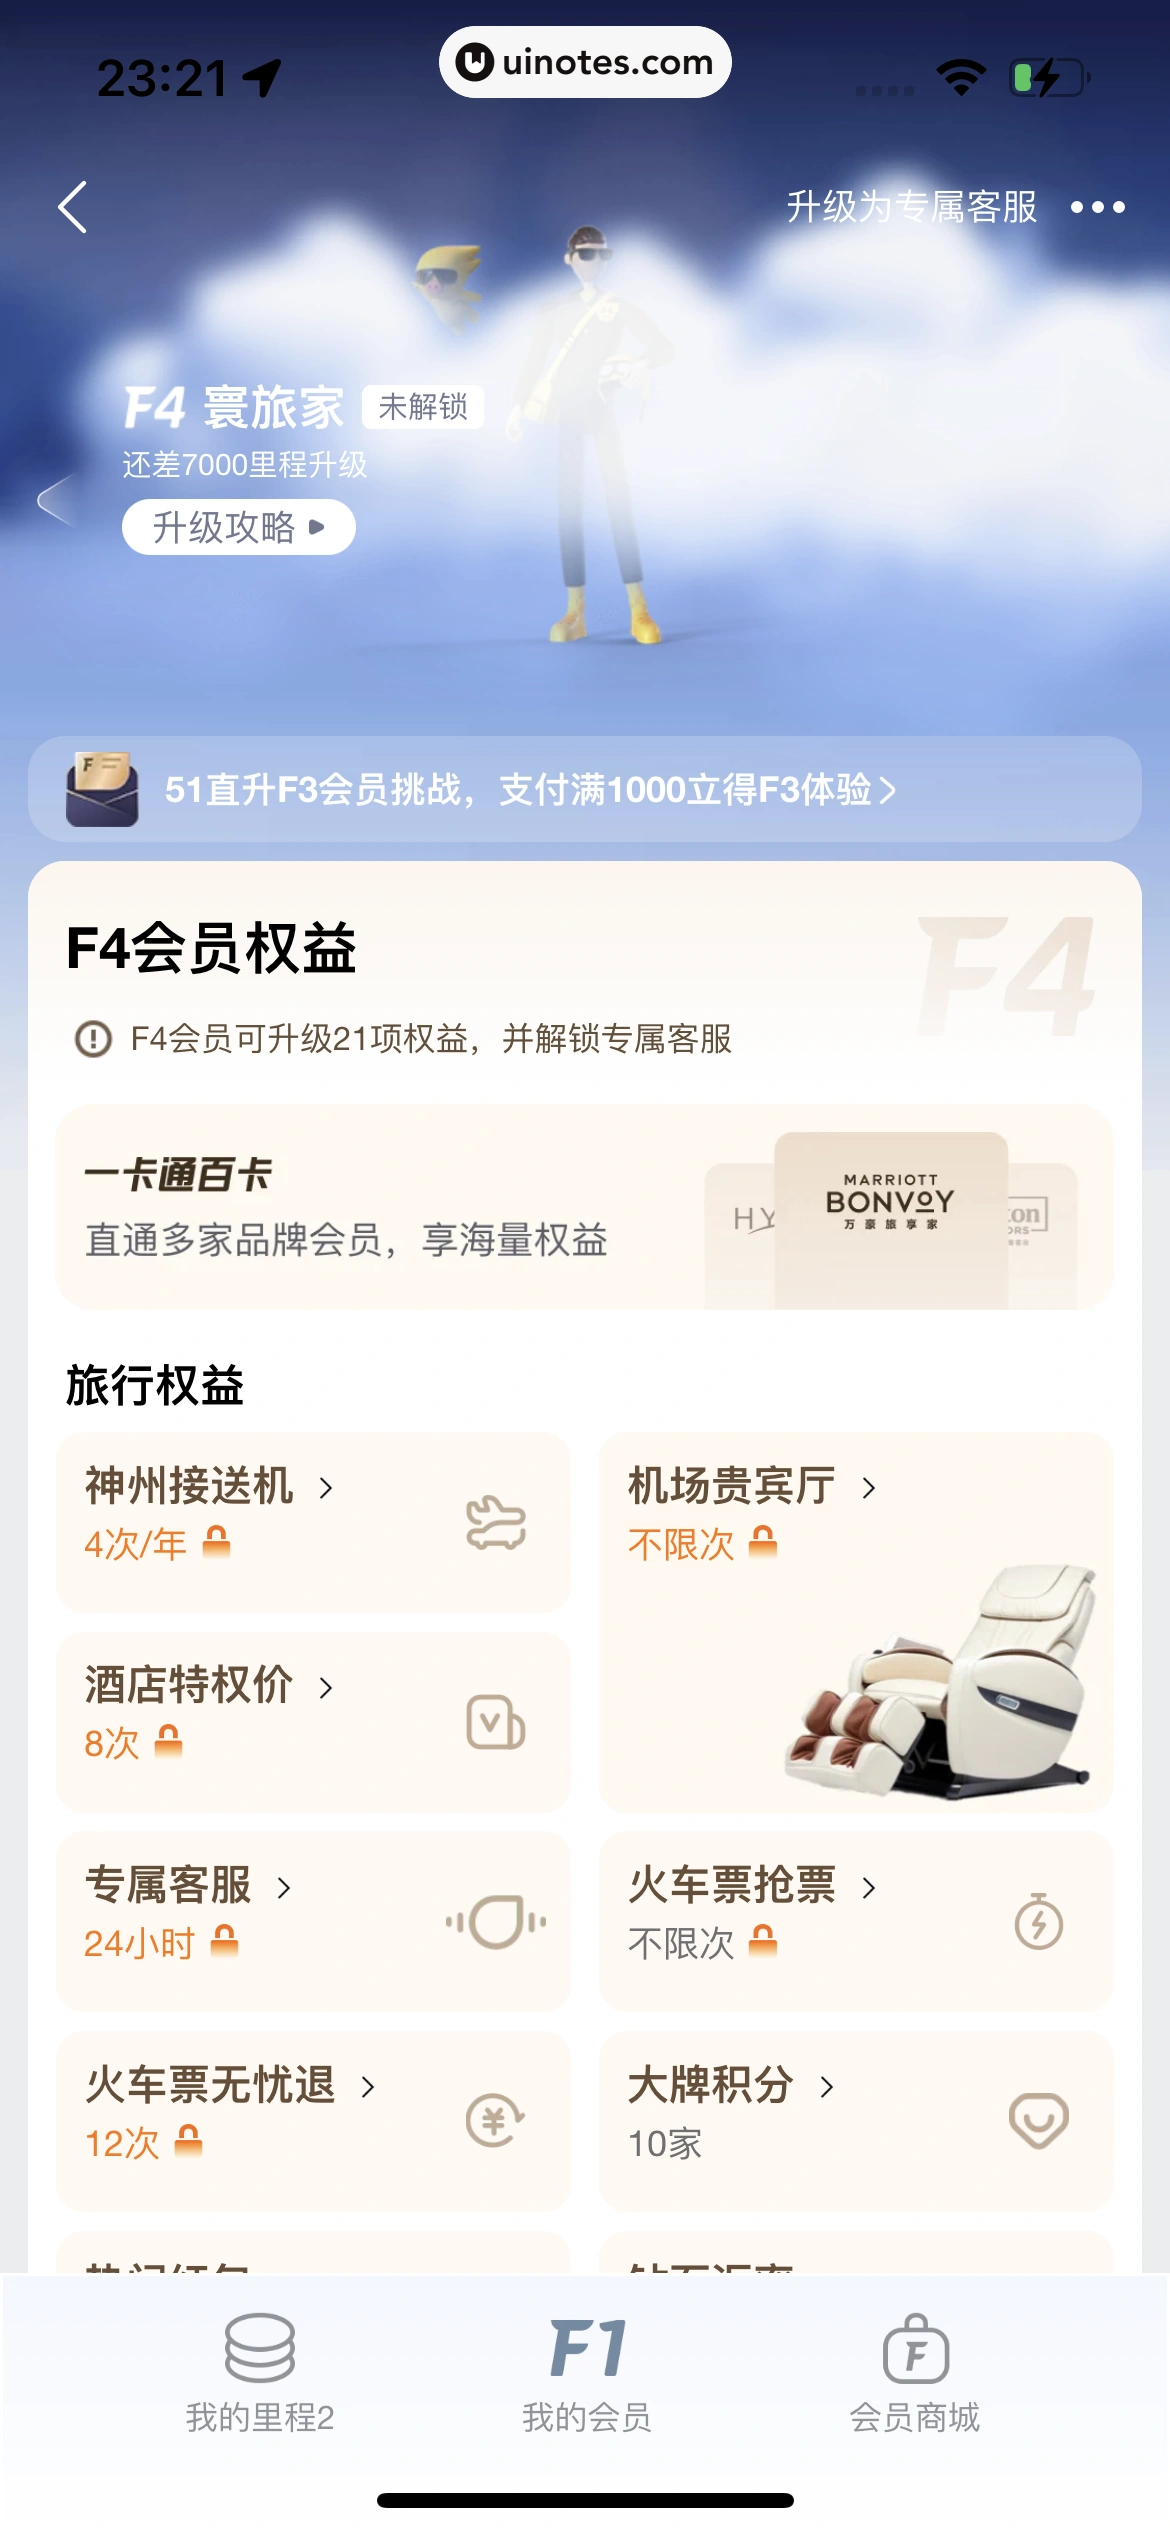 飞猪旅行 App 截图 868 - UI Notes